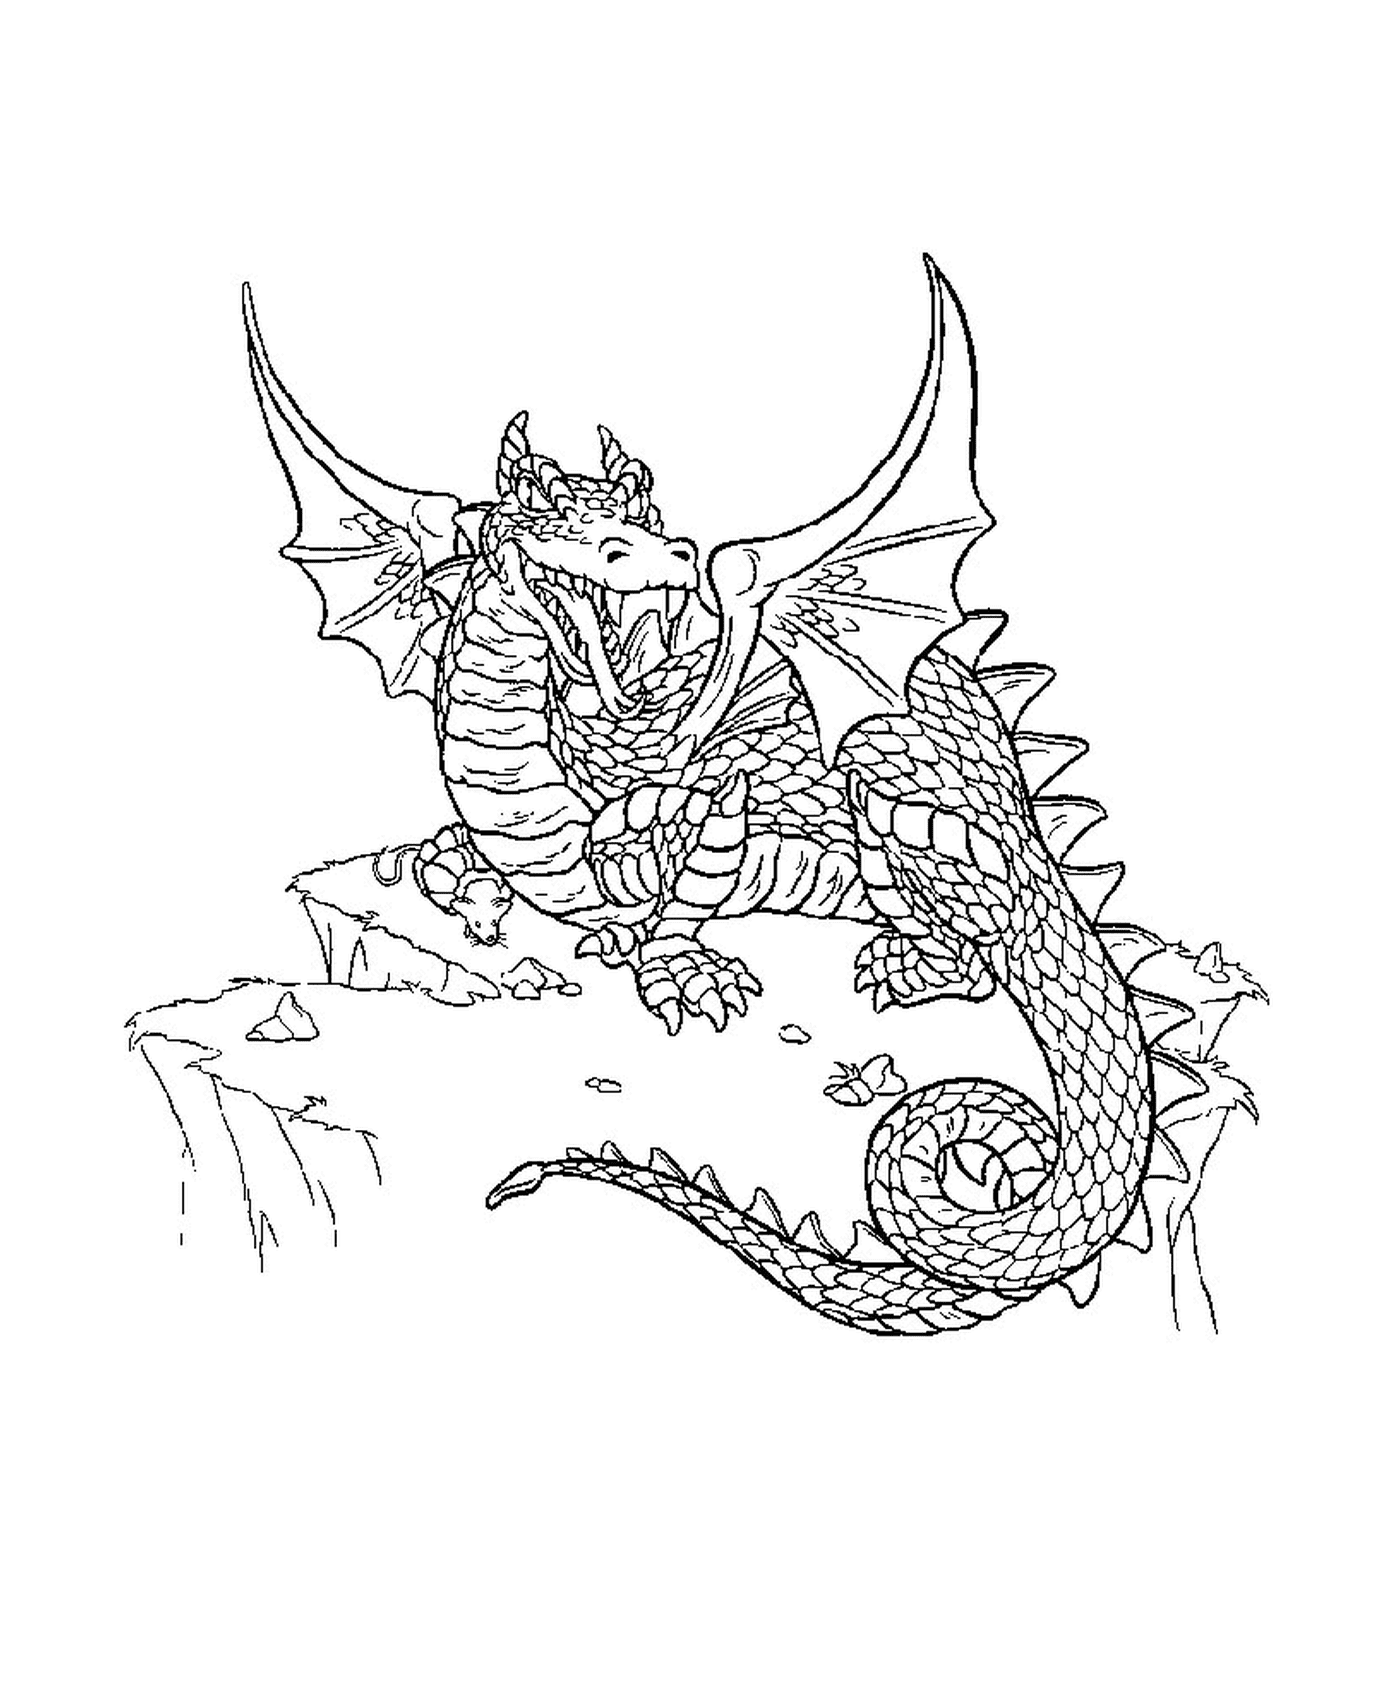  Un dragón encaramado en un acantilado 